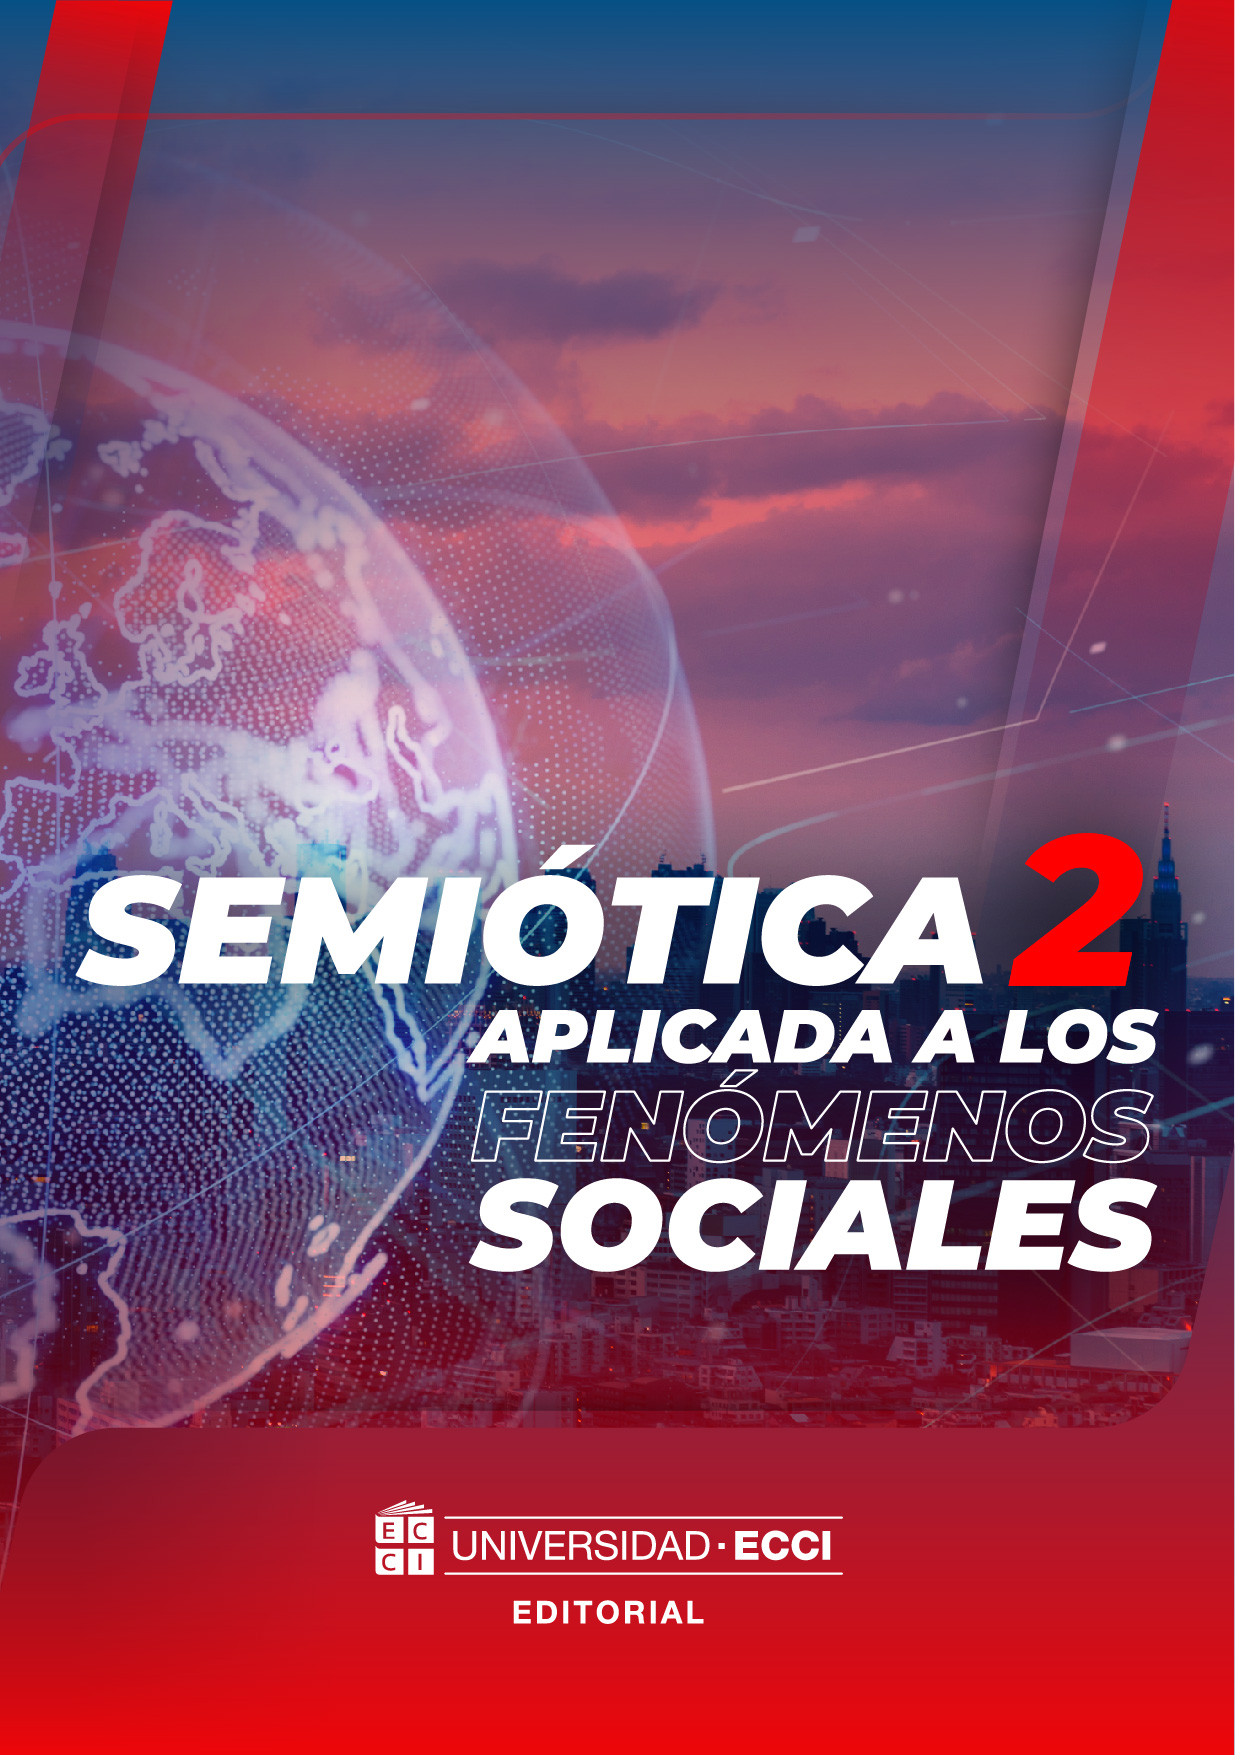 Semiotica 2 aplicada a los fenomenos sociales